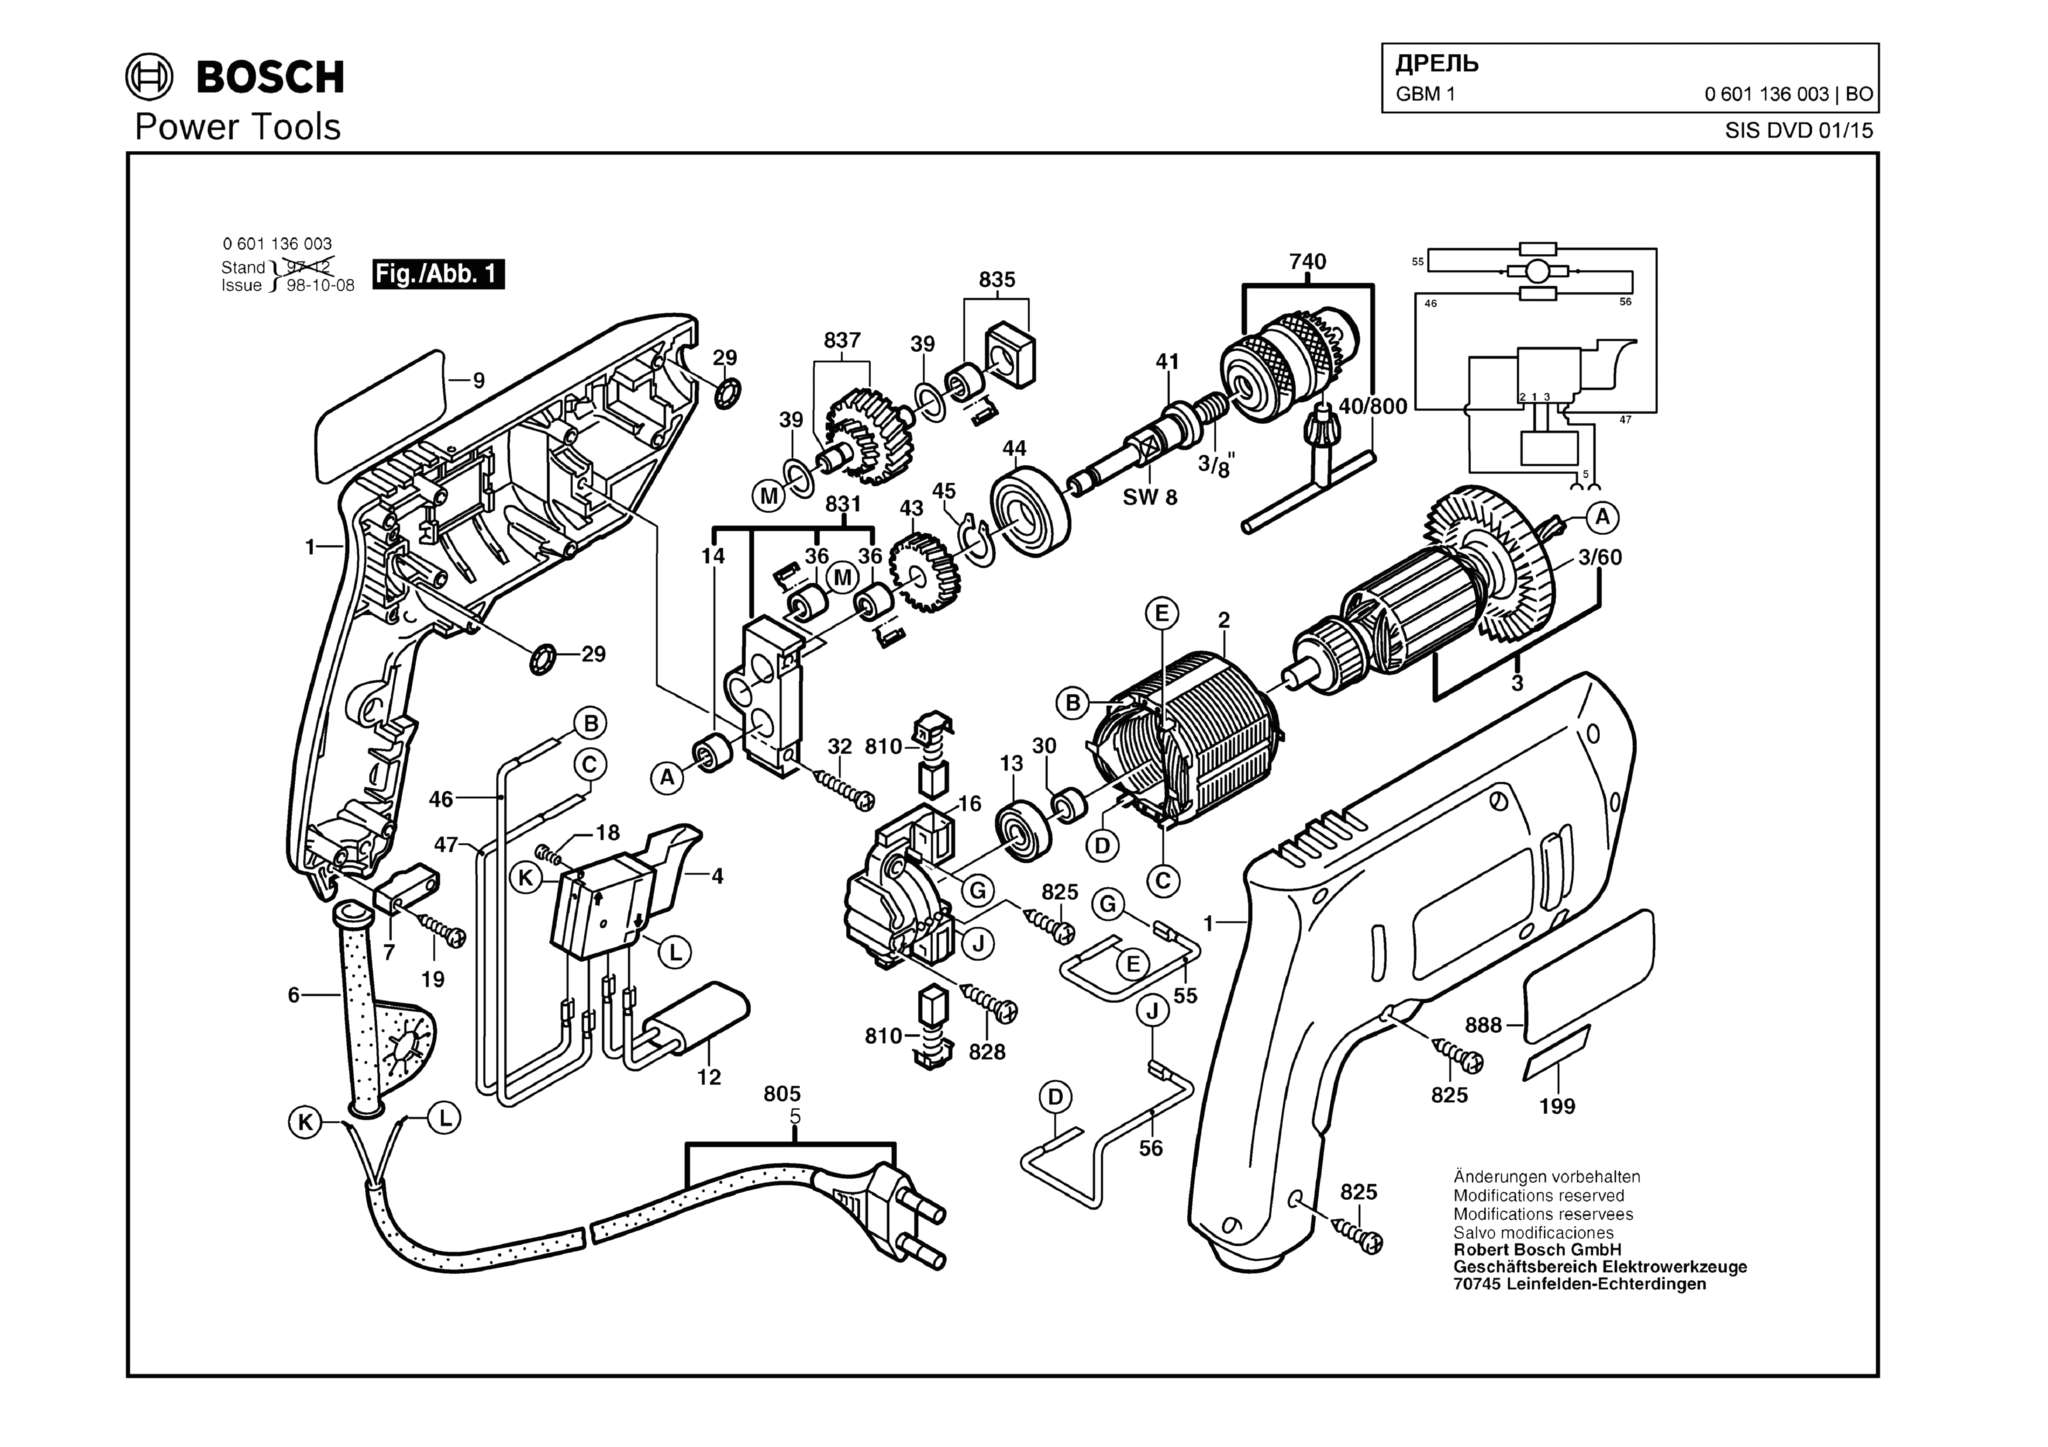 Запчасти, схема и деталировка Bosch GBM 1 (ТИП 0601136003)